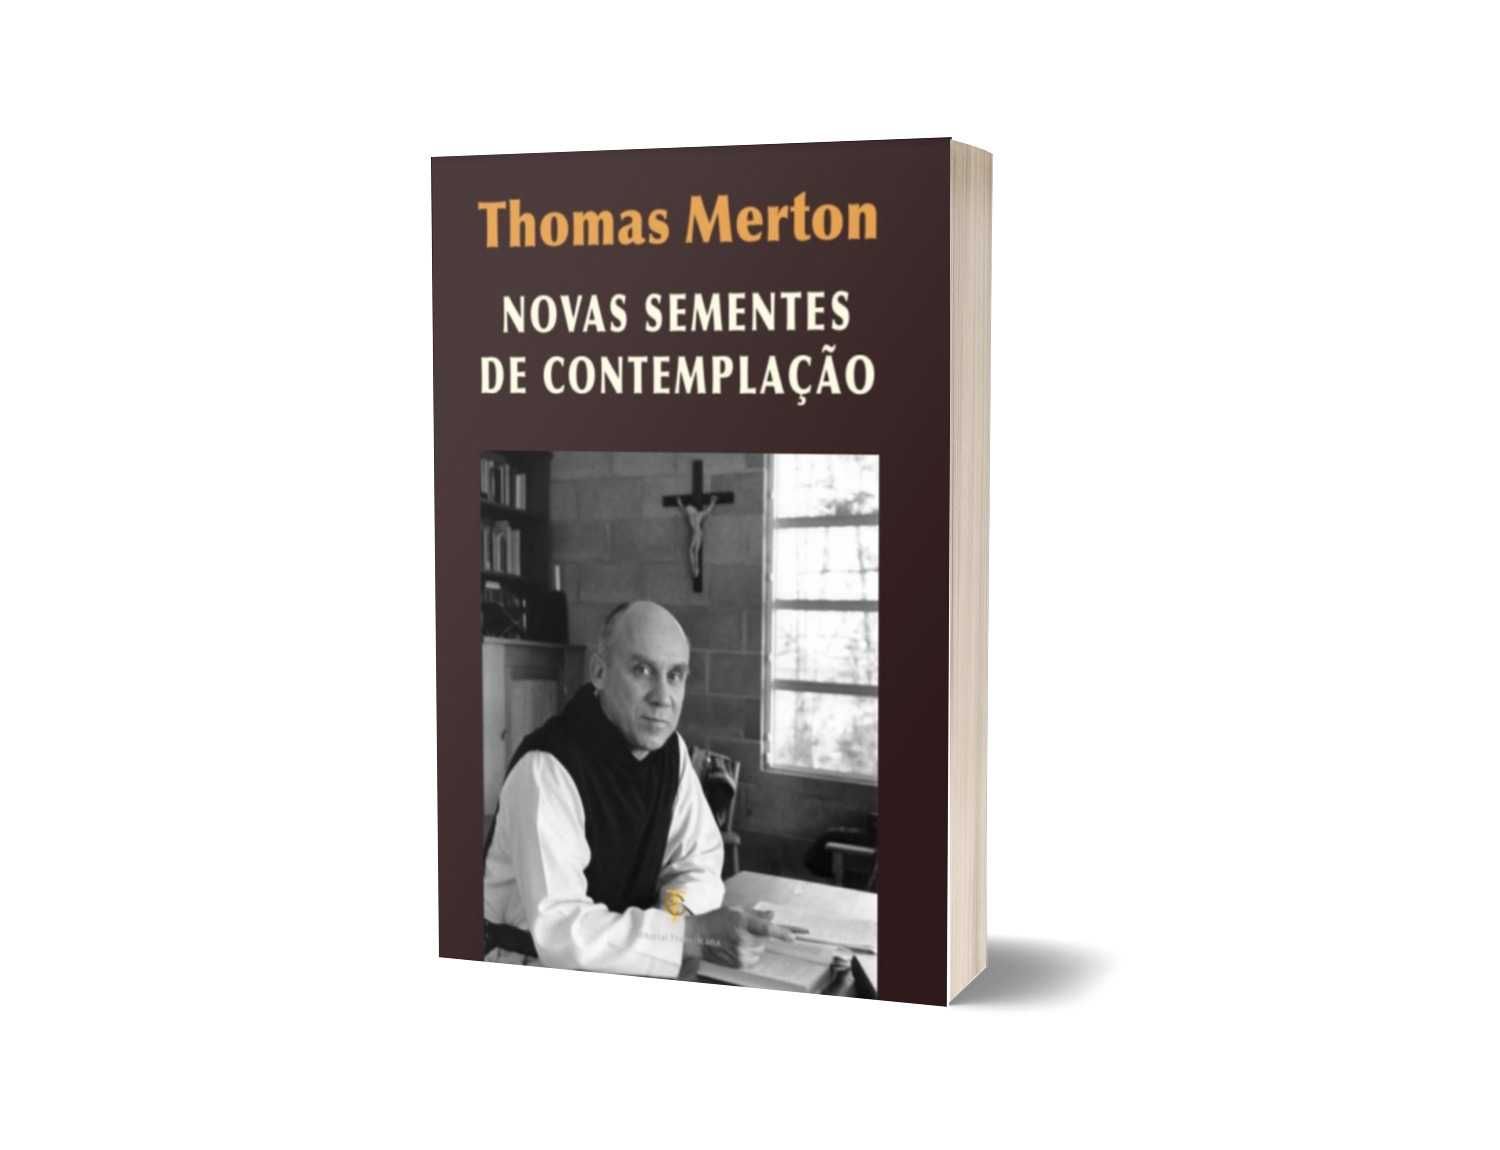 Thomas Merton - Novas sementes contemplação